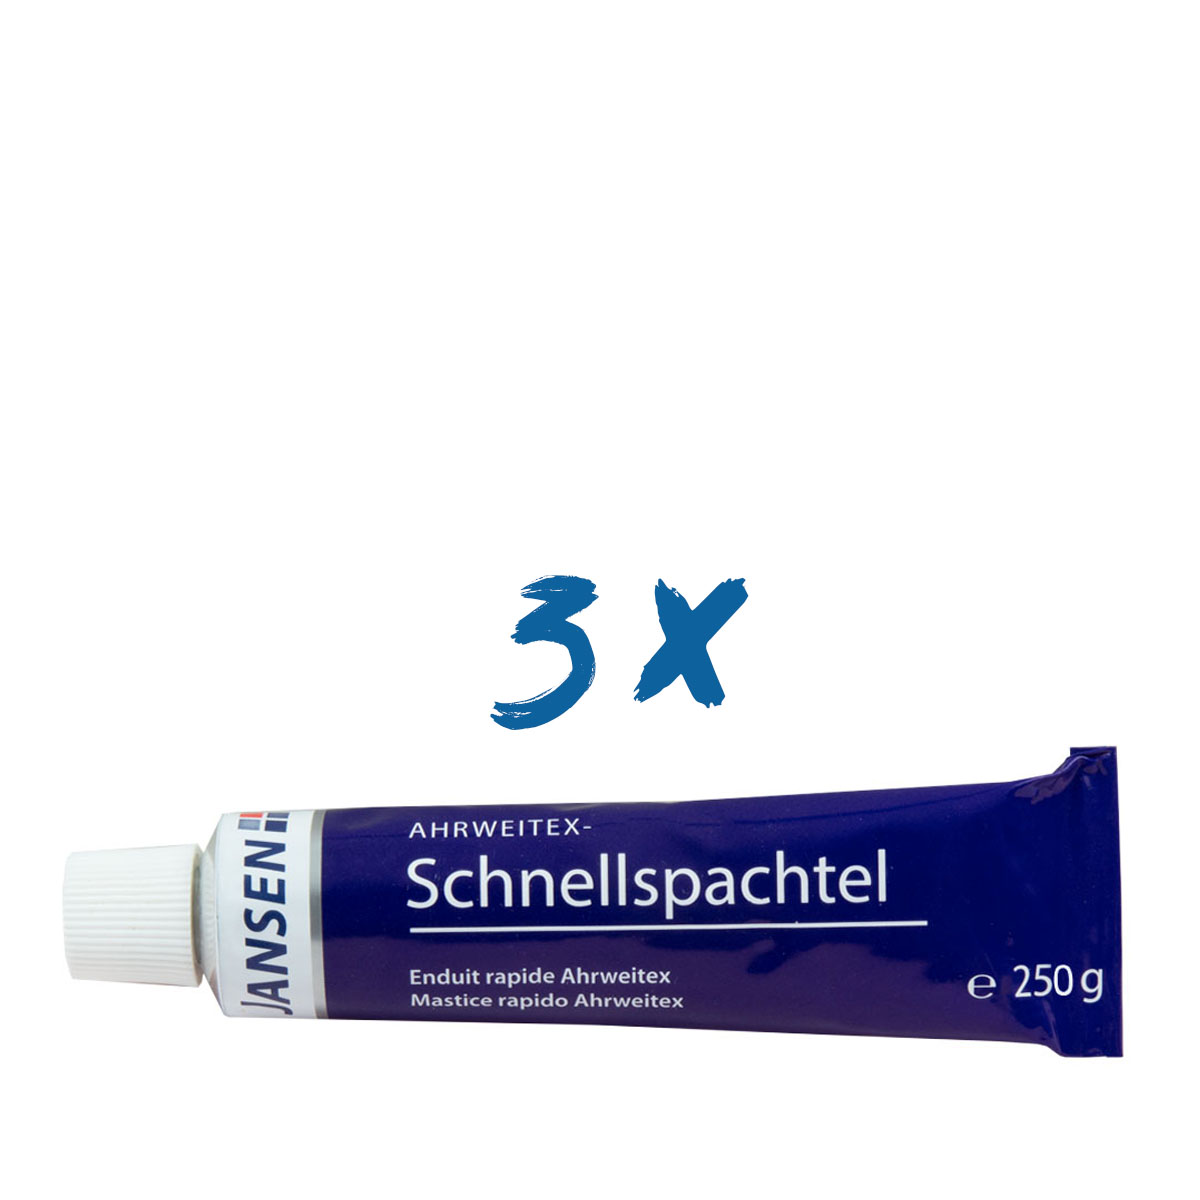 3x Jansen Ahrweitex-Schnellspachtel 250g Tube, Malerspachtel